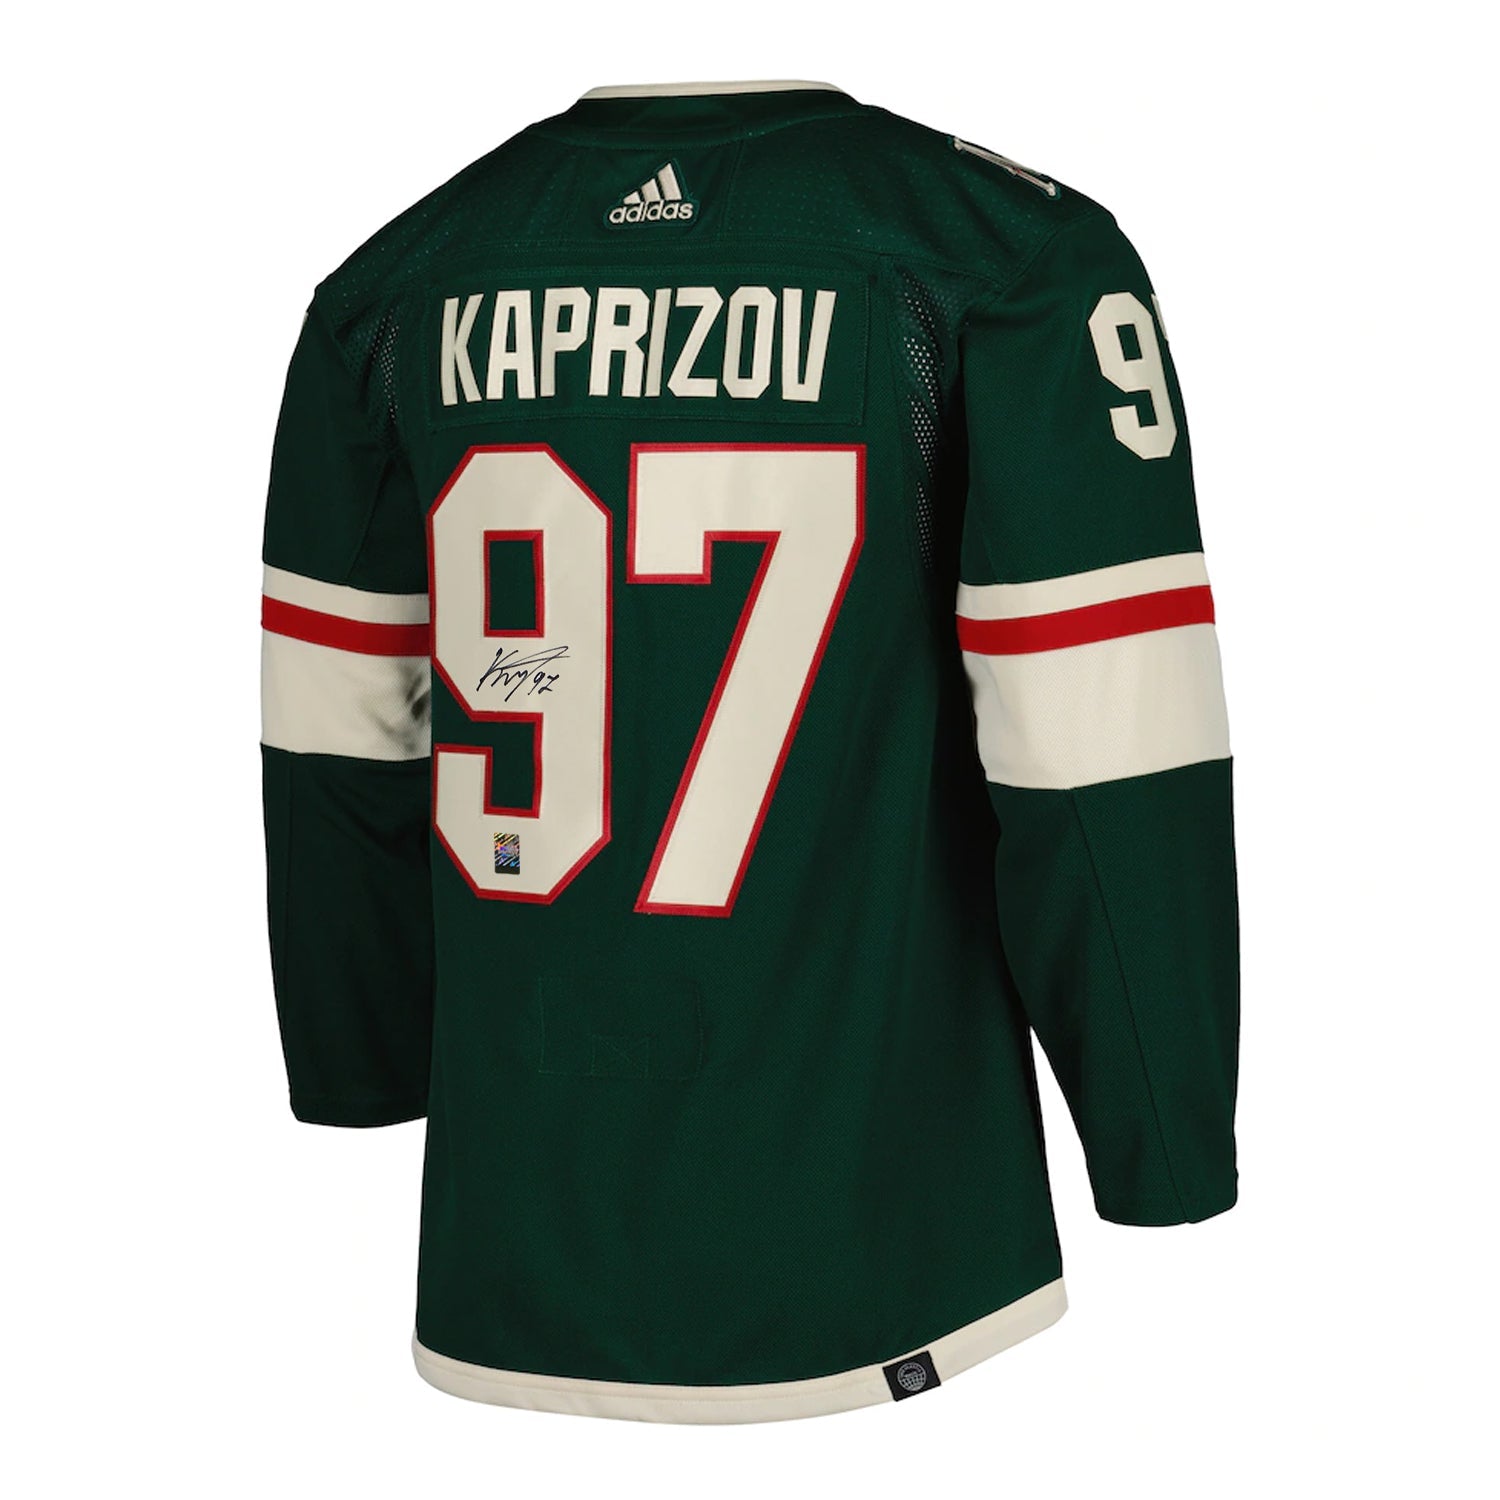 Kirill Kaprizov Signed Minnesota Wild Adidas Pro Jersey